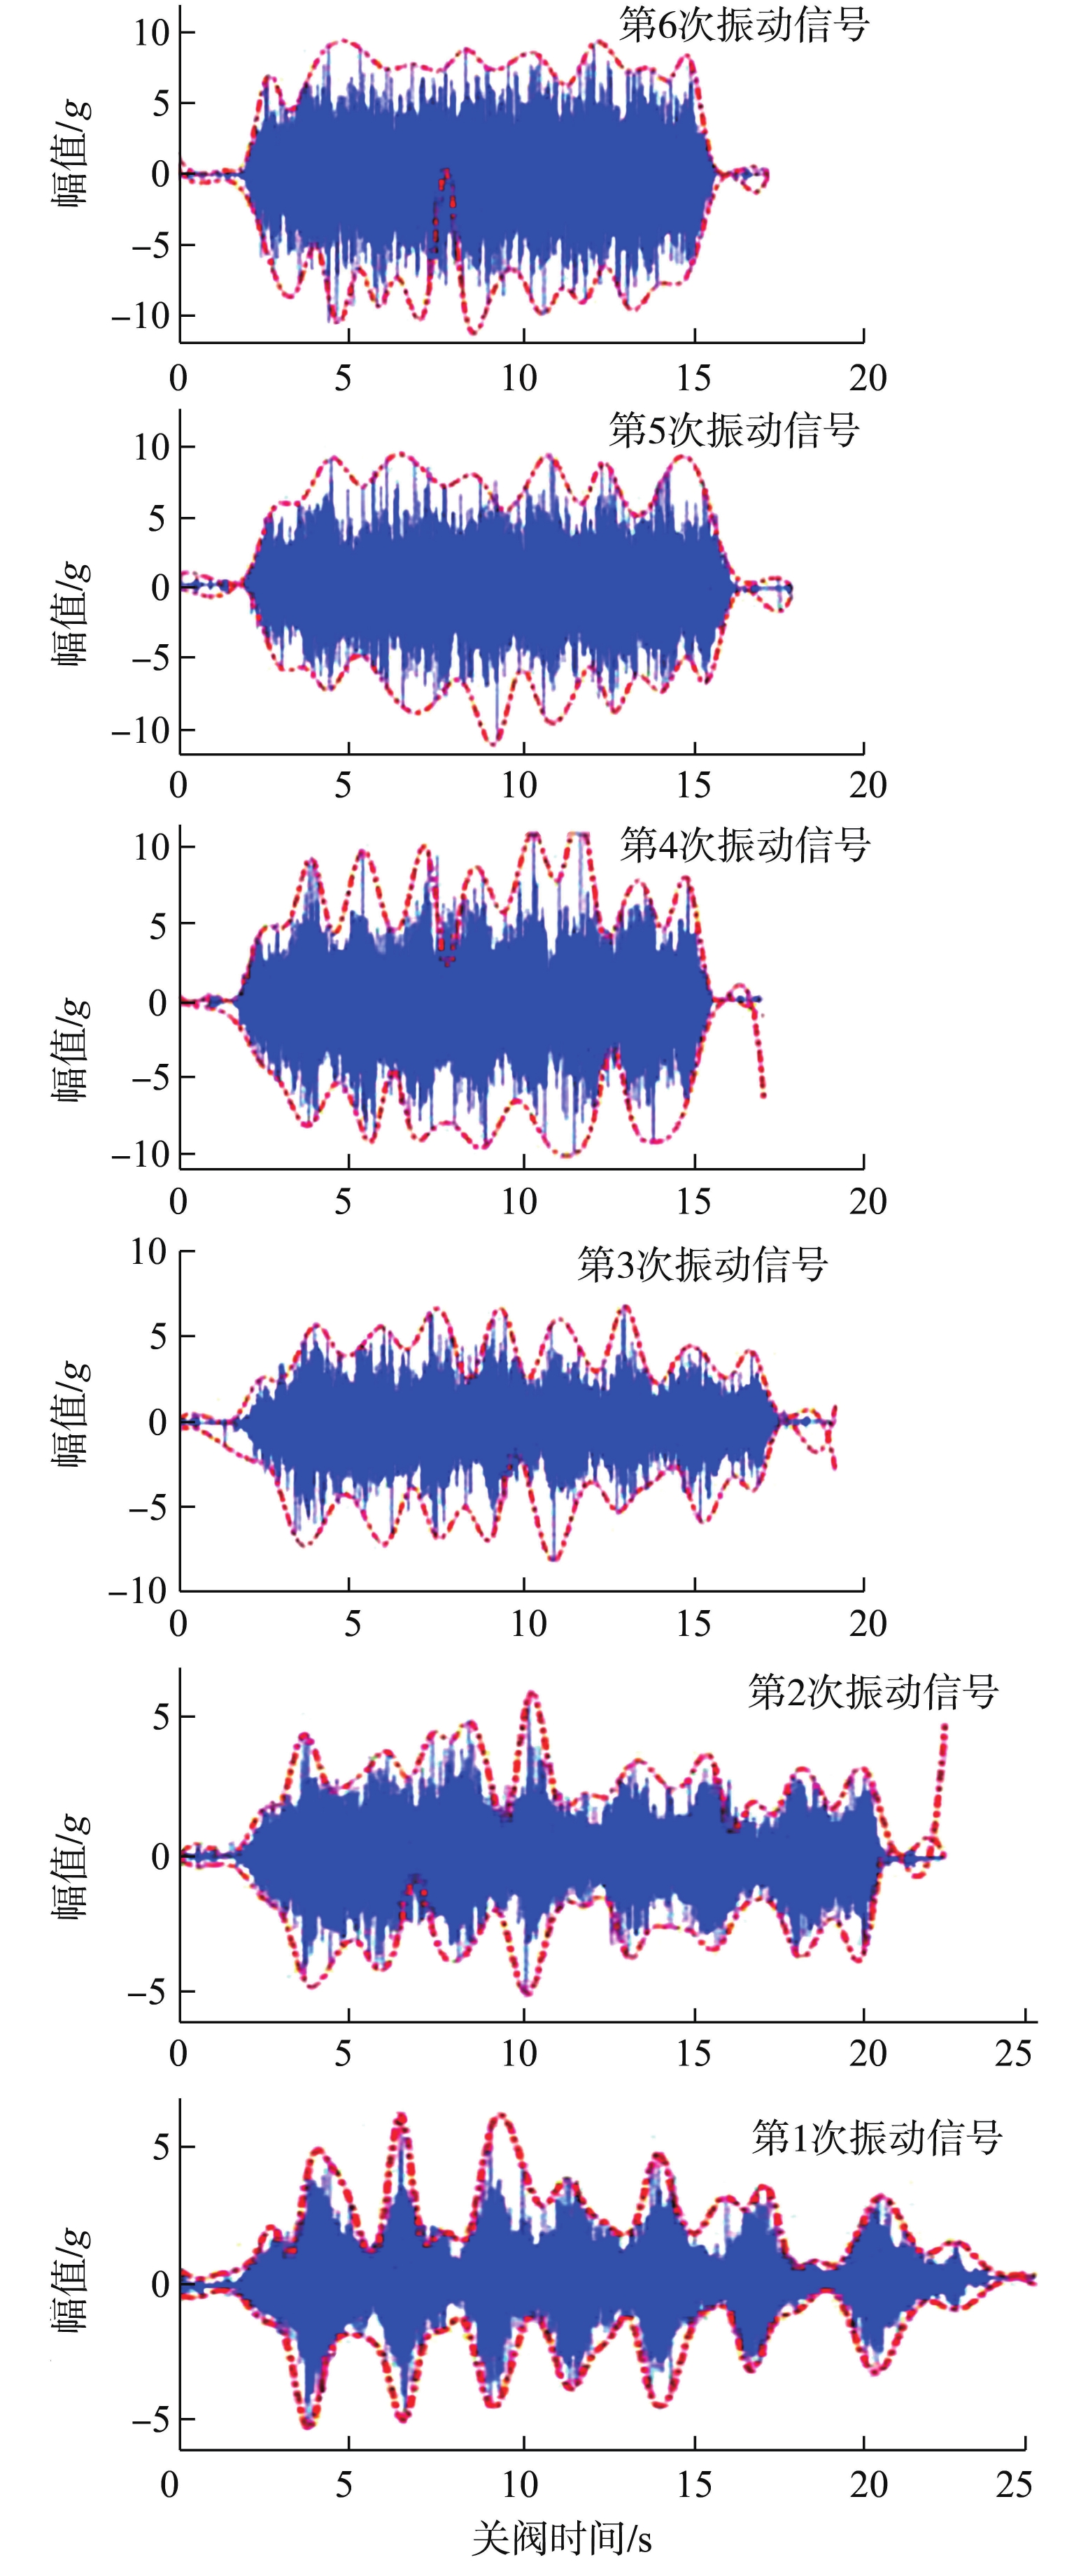 基于Hilbert-Huang变换和BP神经网络的核级电动阀门退化趋势预测